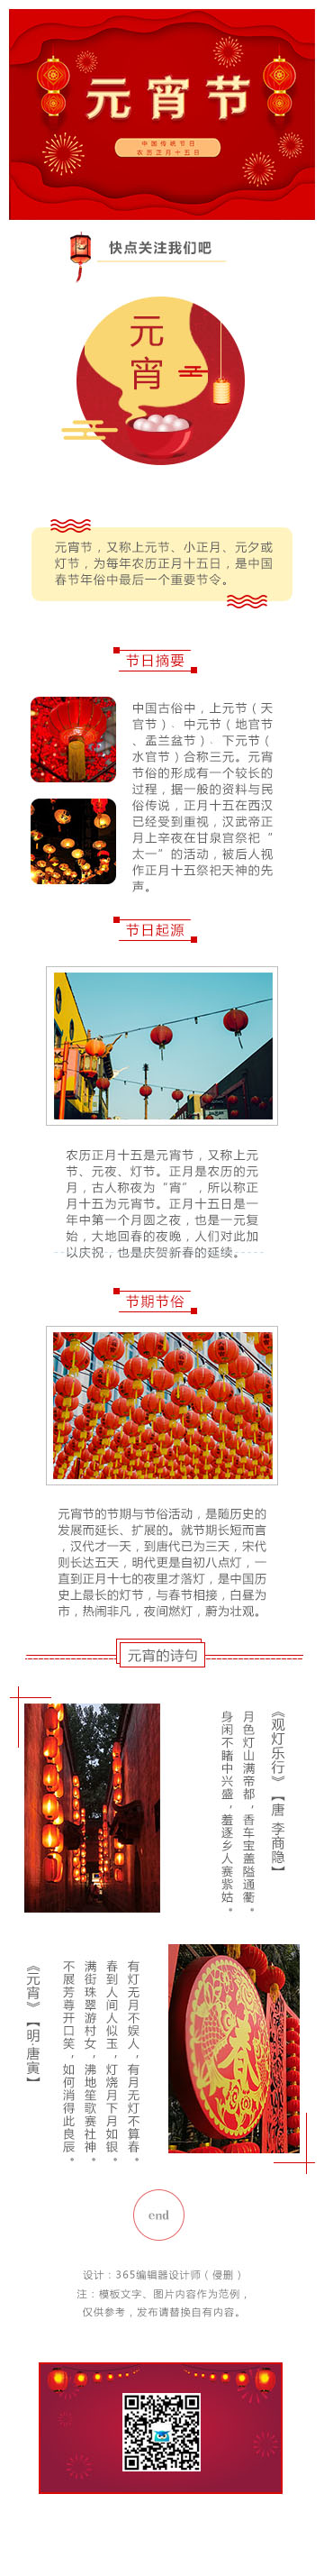 元宵节节日庆祝红色热闹模板